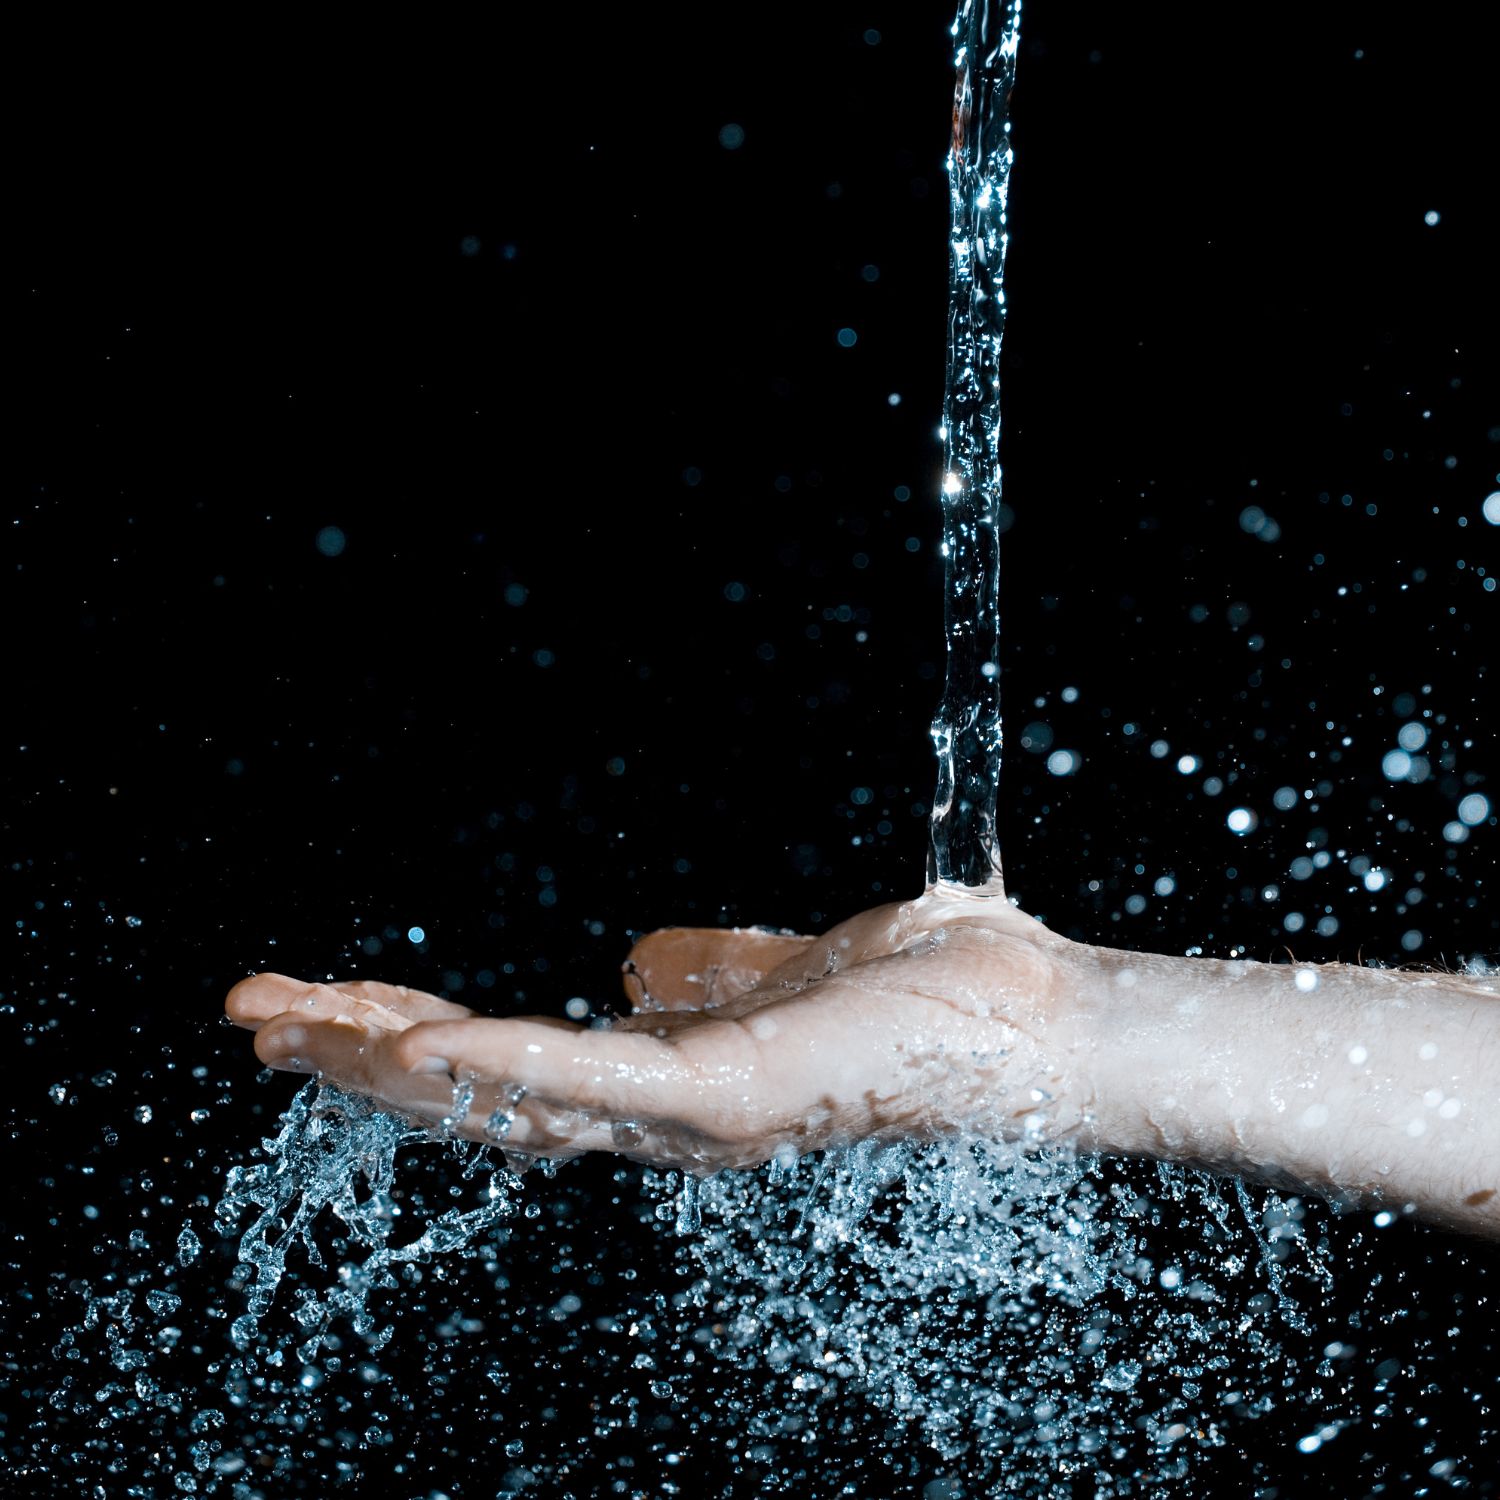 Água Limpa - FIltro de Desinfecção Ultravioleta